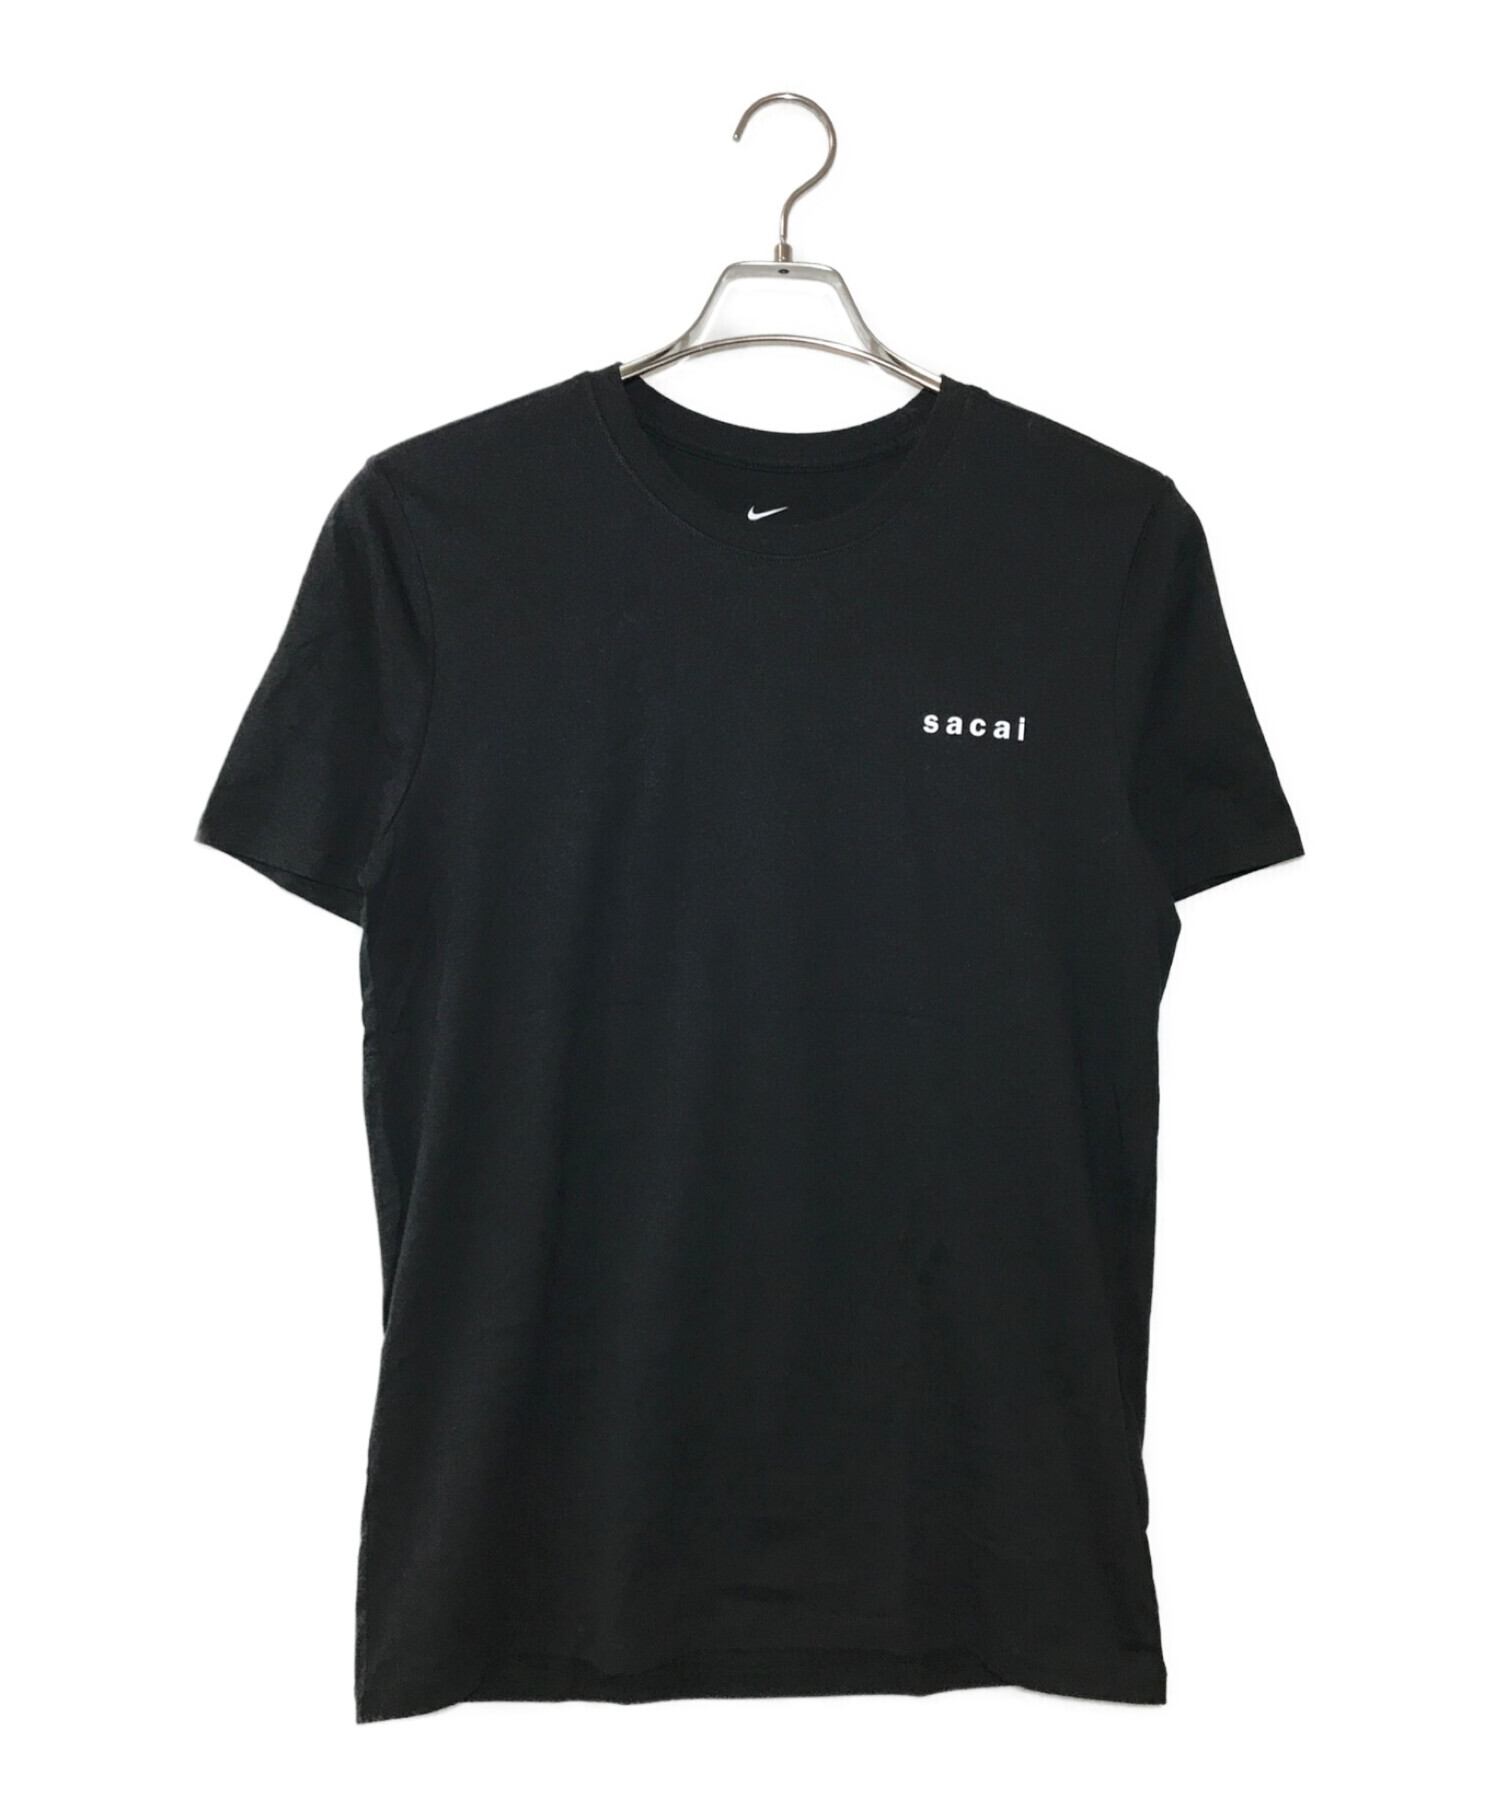 【リアル】Nike sacai ナイキ サカイ Tシャツ Tシャツ/カットソー(半袖/袖なし)